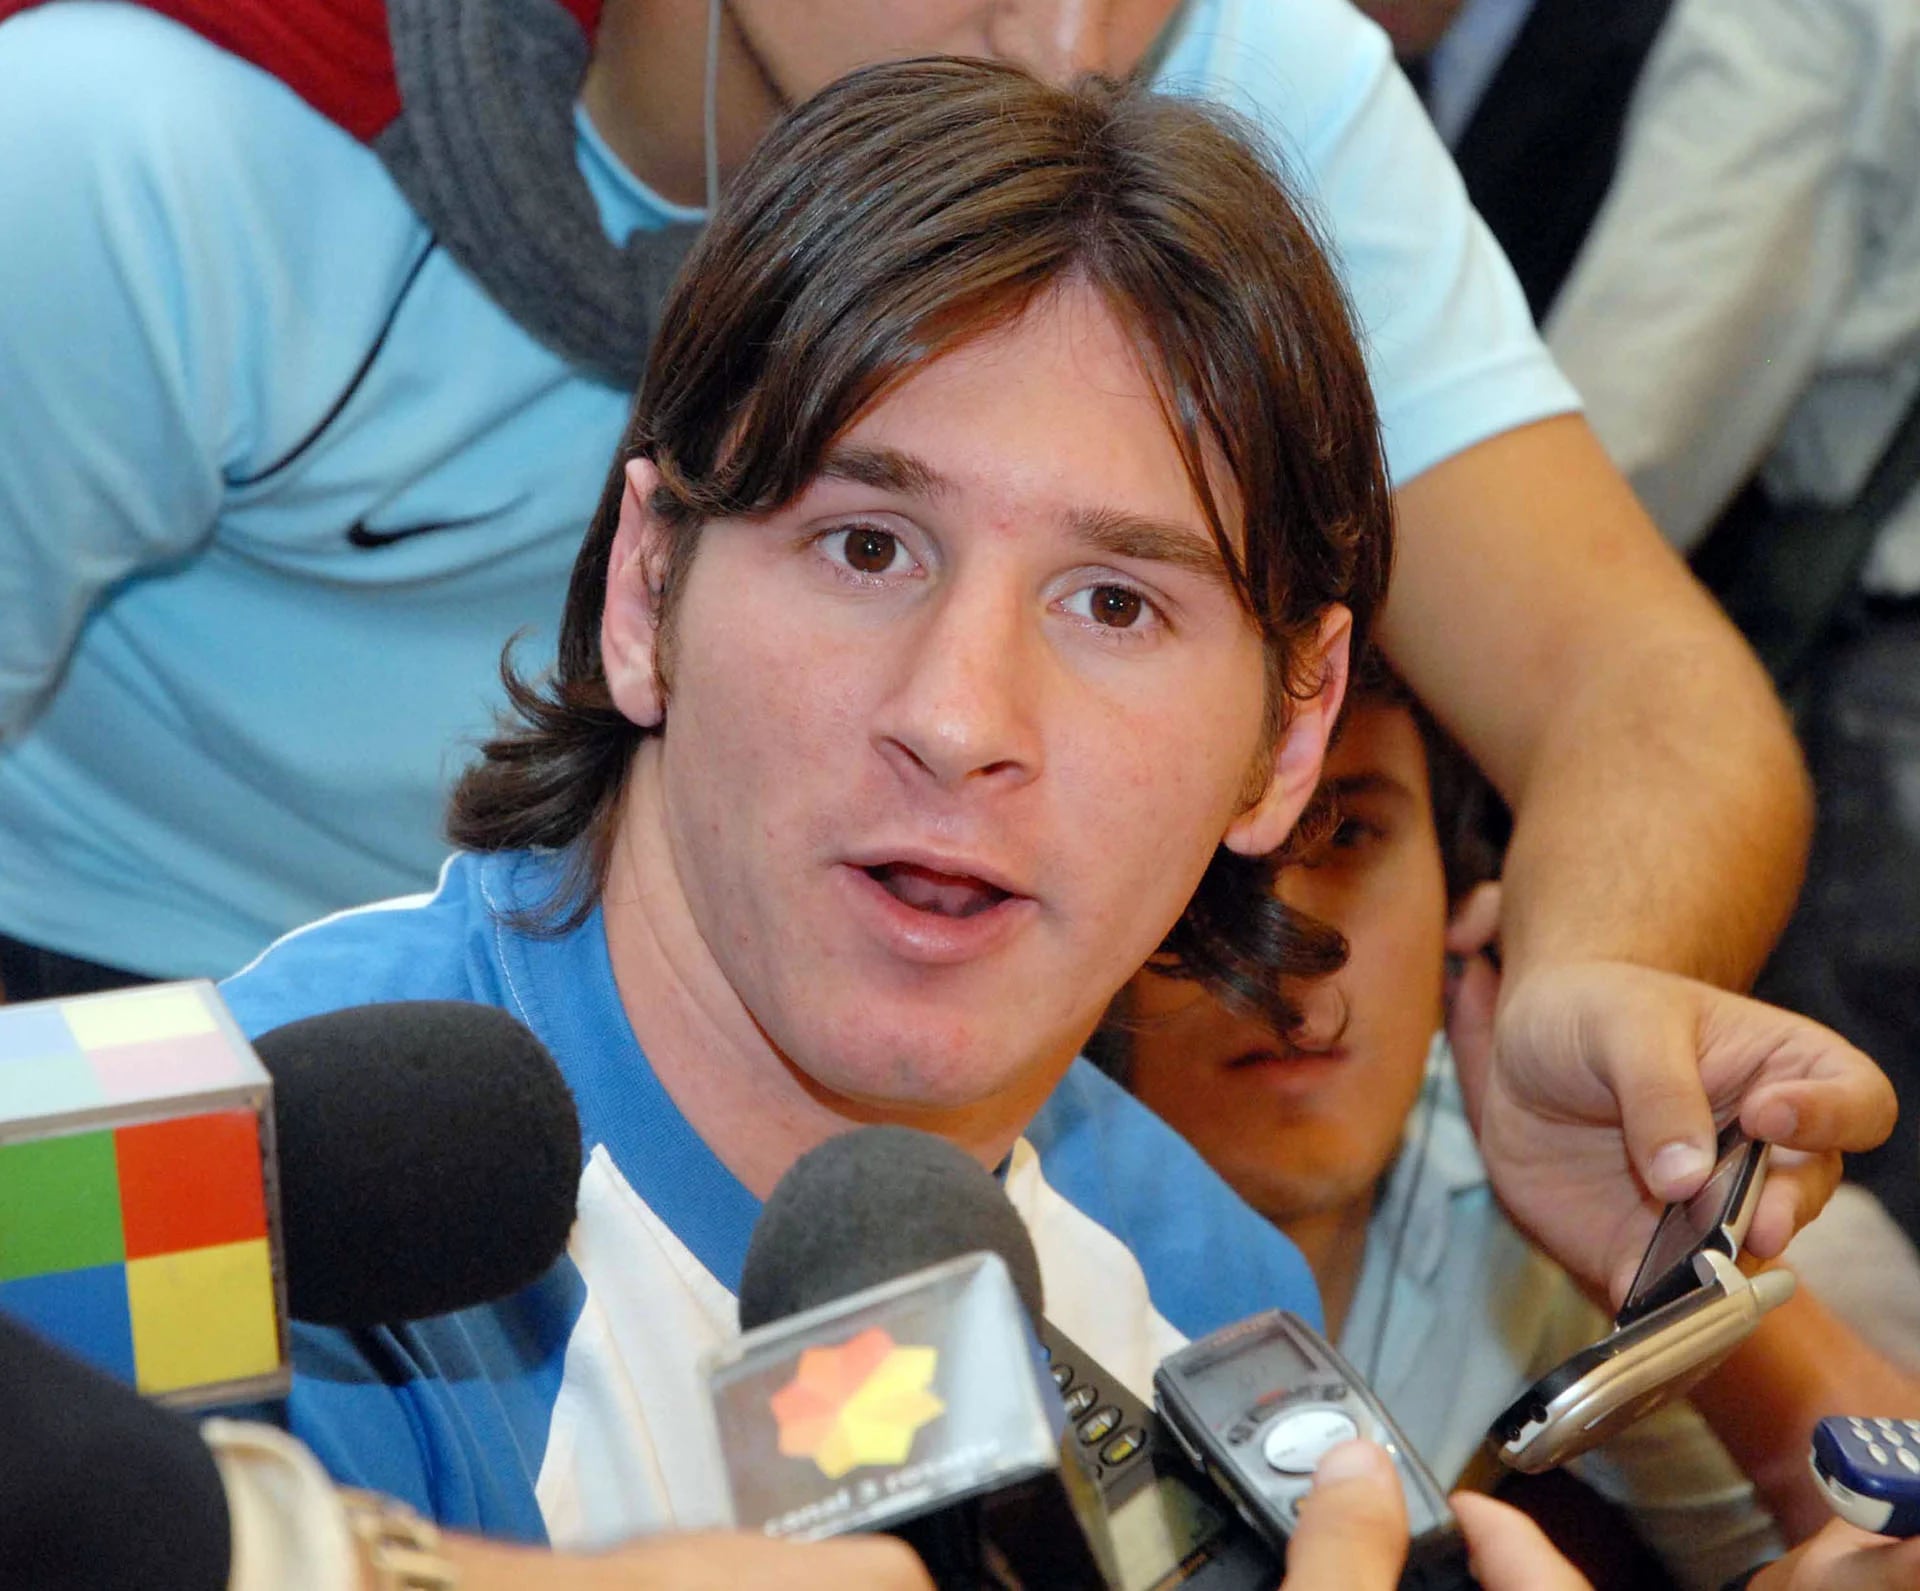 Look juvenil: Lionel Messi ya era centro de las noticias en 2006(NA)